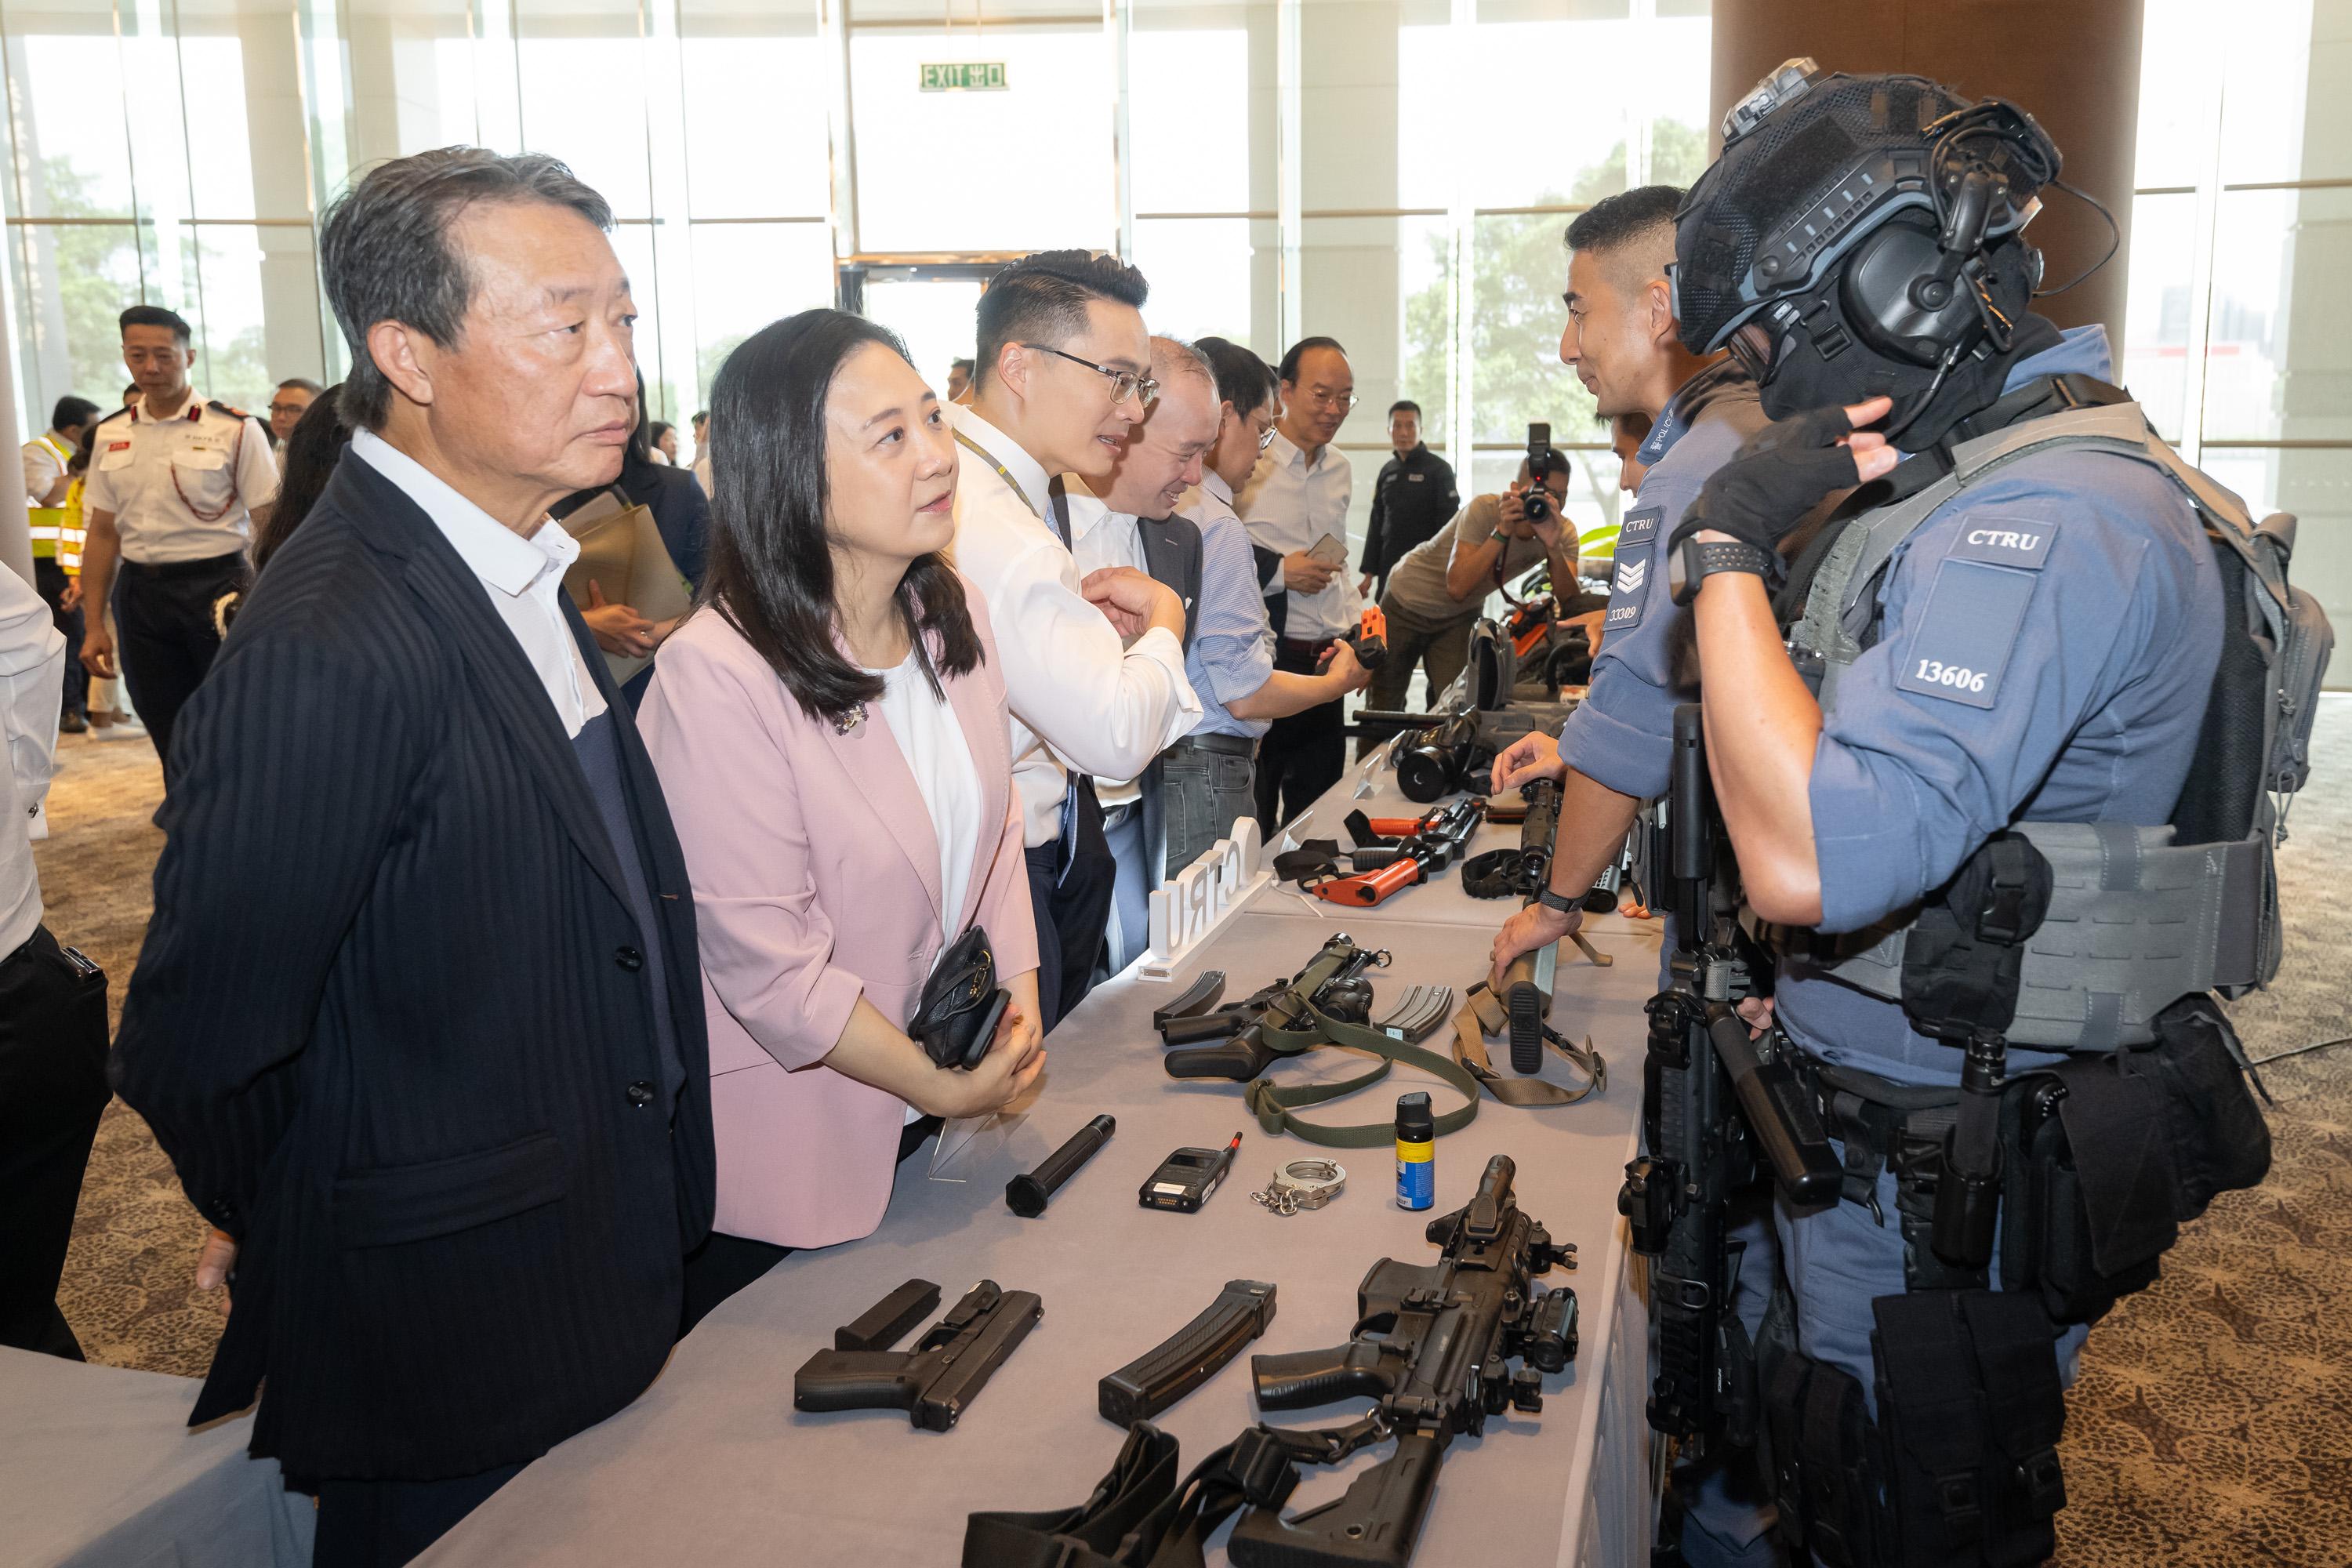 立法会保安事务委员会今日（六月二十四日）视察于香港会议展览中心举行，代号「劲弩」的跨部门反恐演习。图示立法会议员了解演习使用的工具。